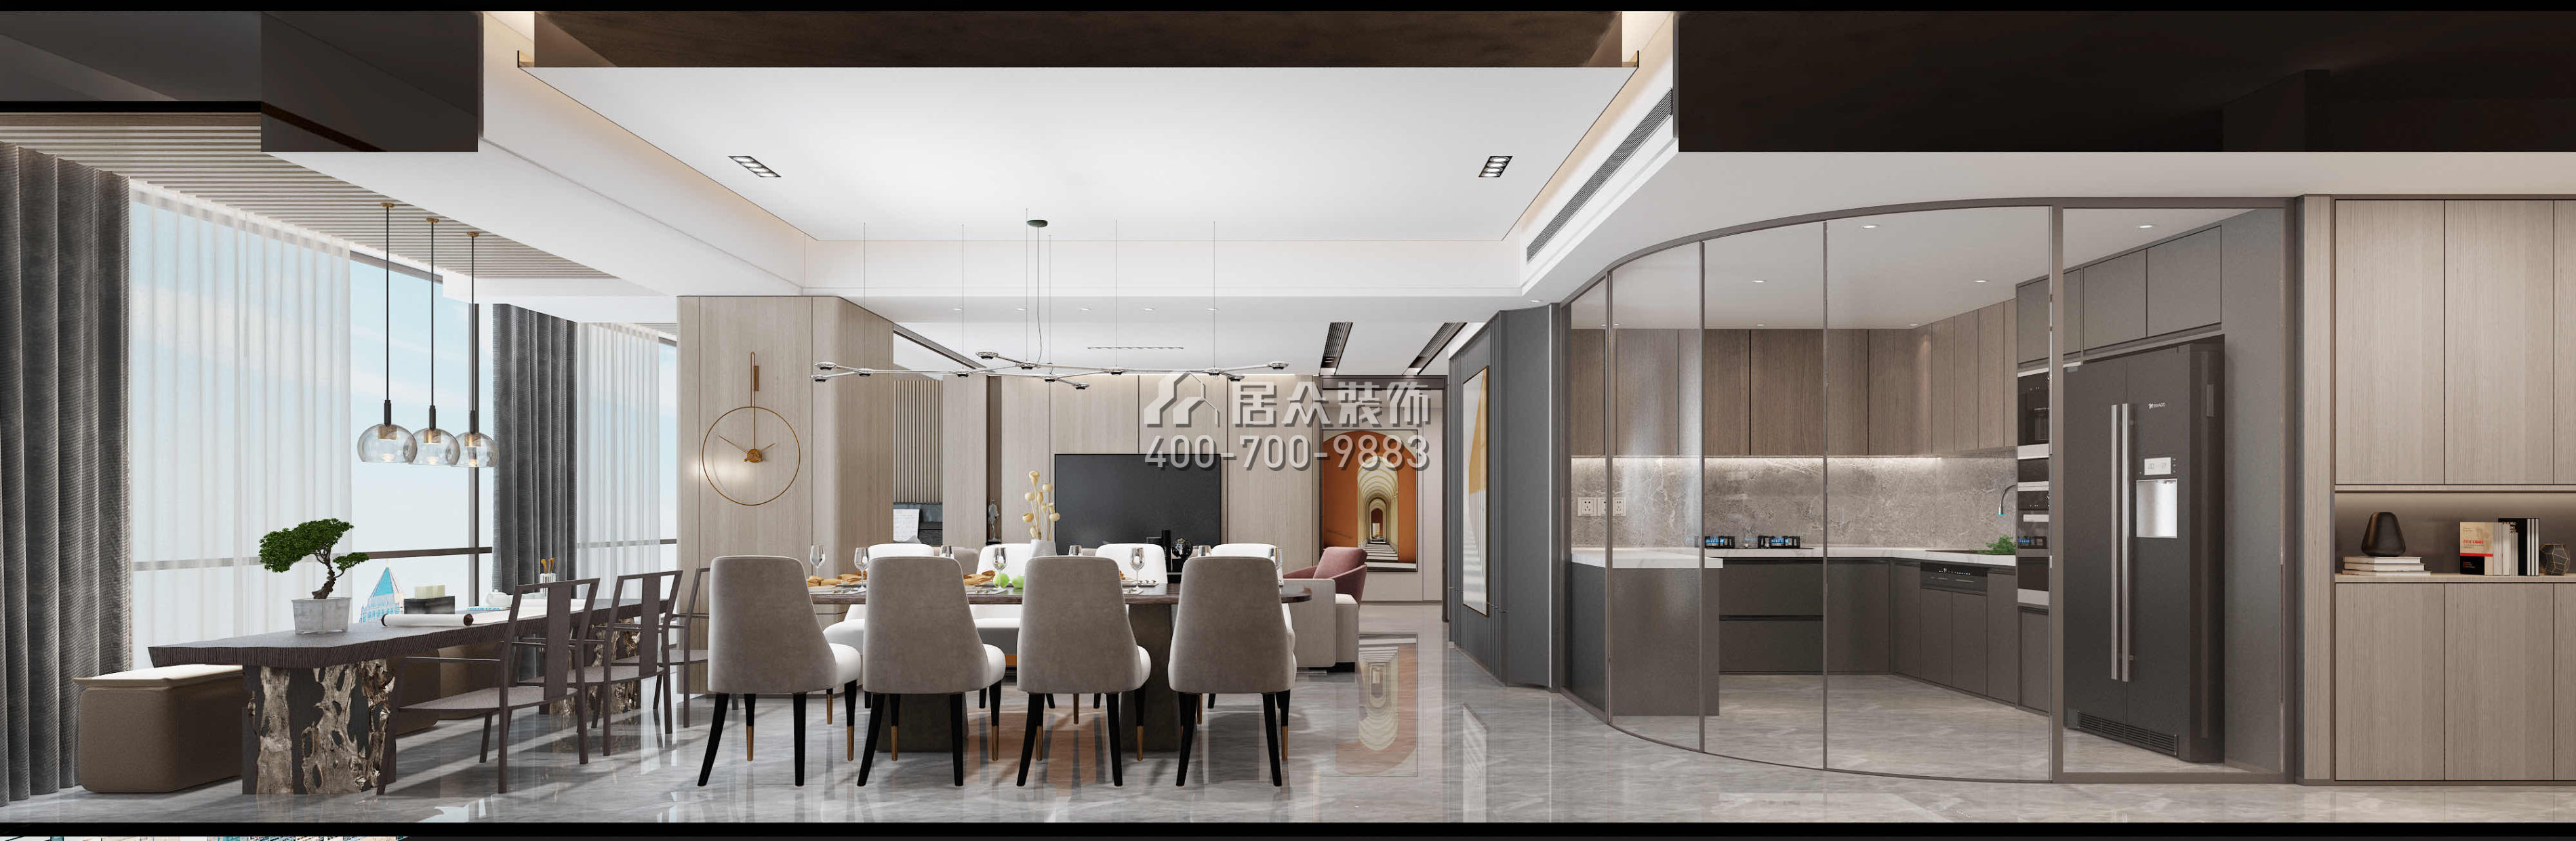 华润城润府198平方米现代简约风格平层户型客餐厅一体开元官网效果图